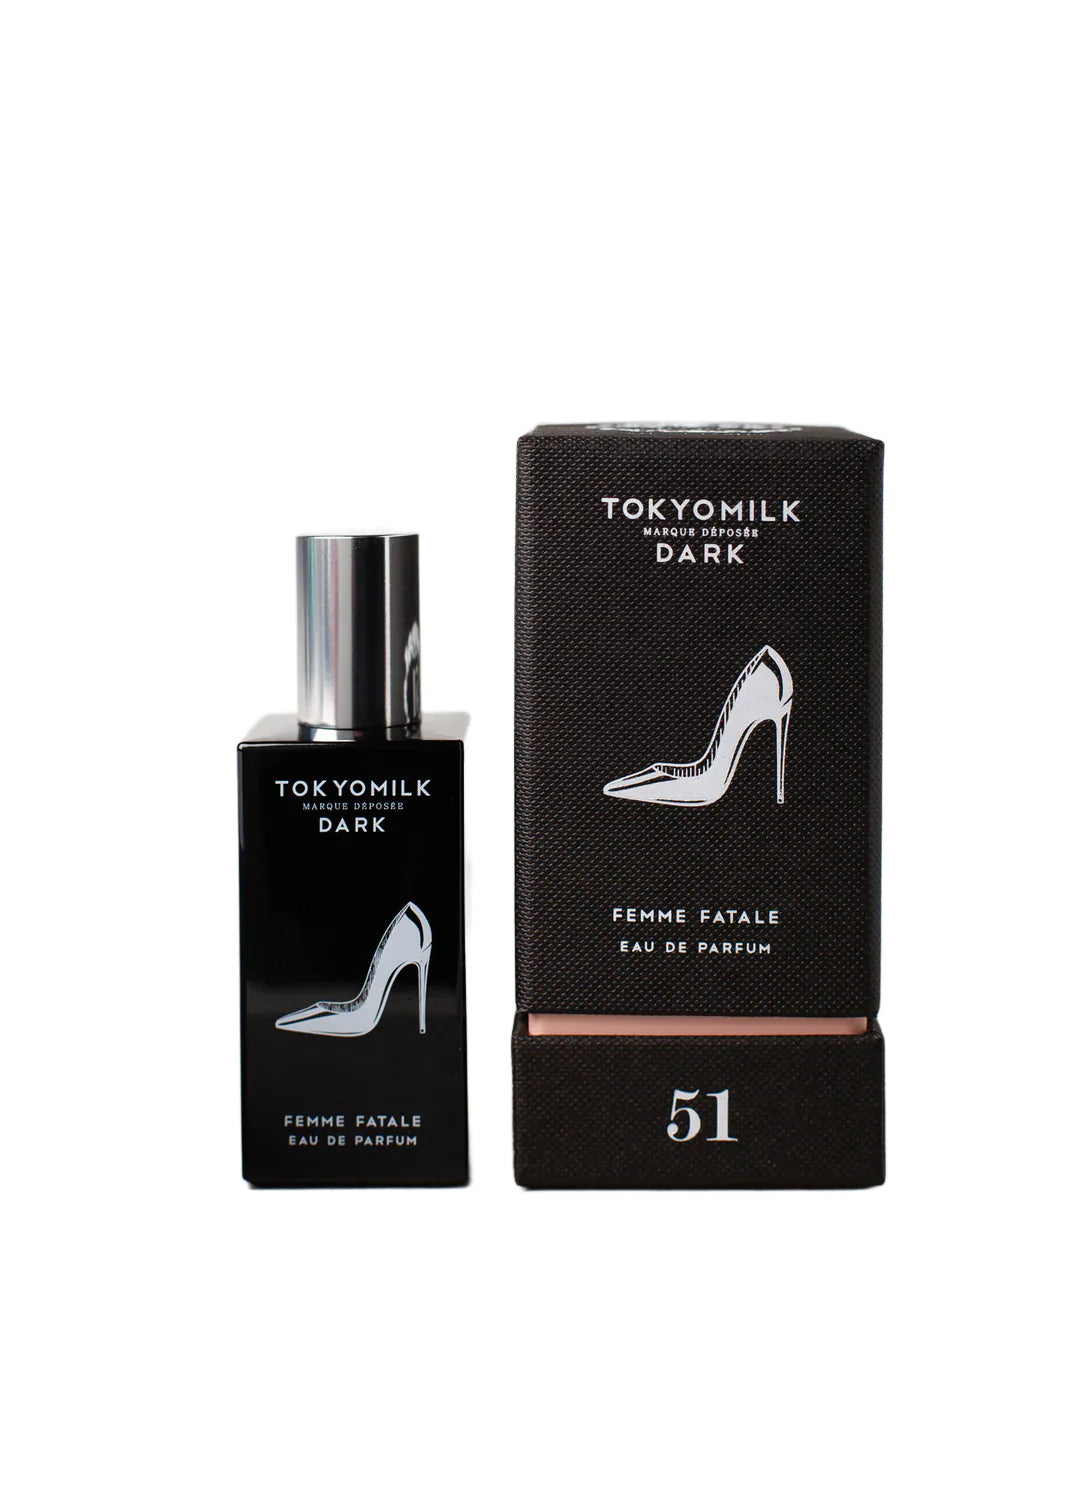 TOKYOMILK DARK Femme Fatale Parfum